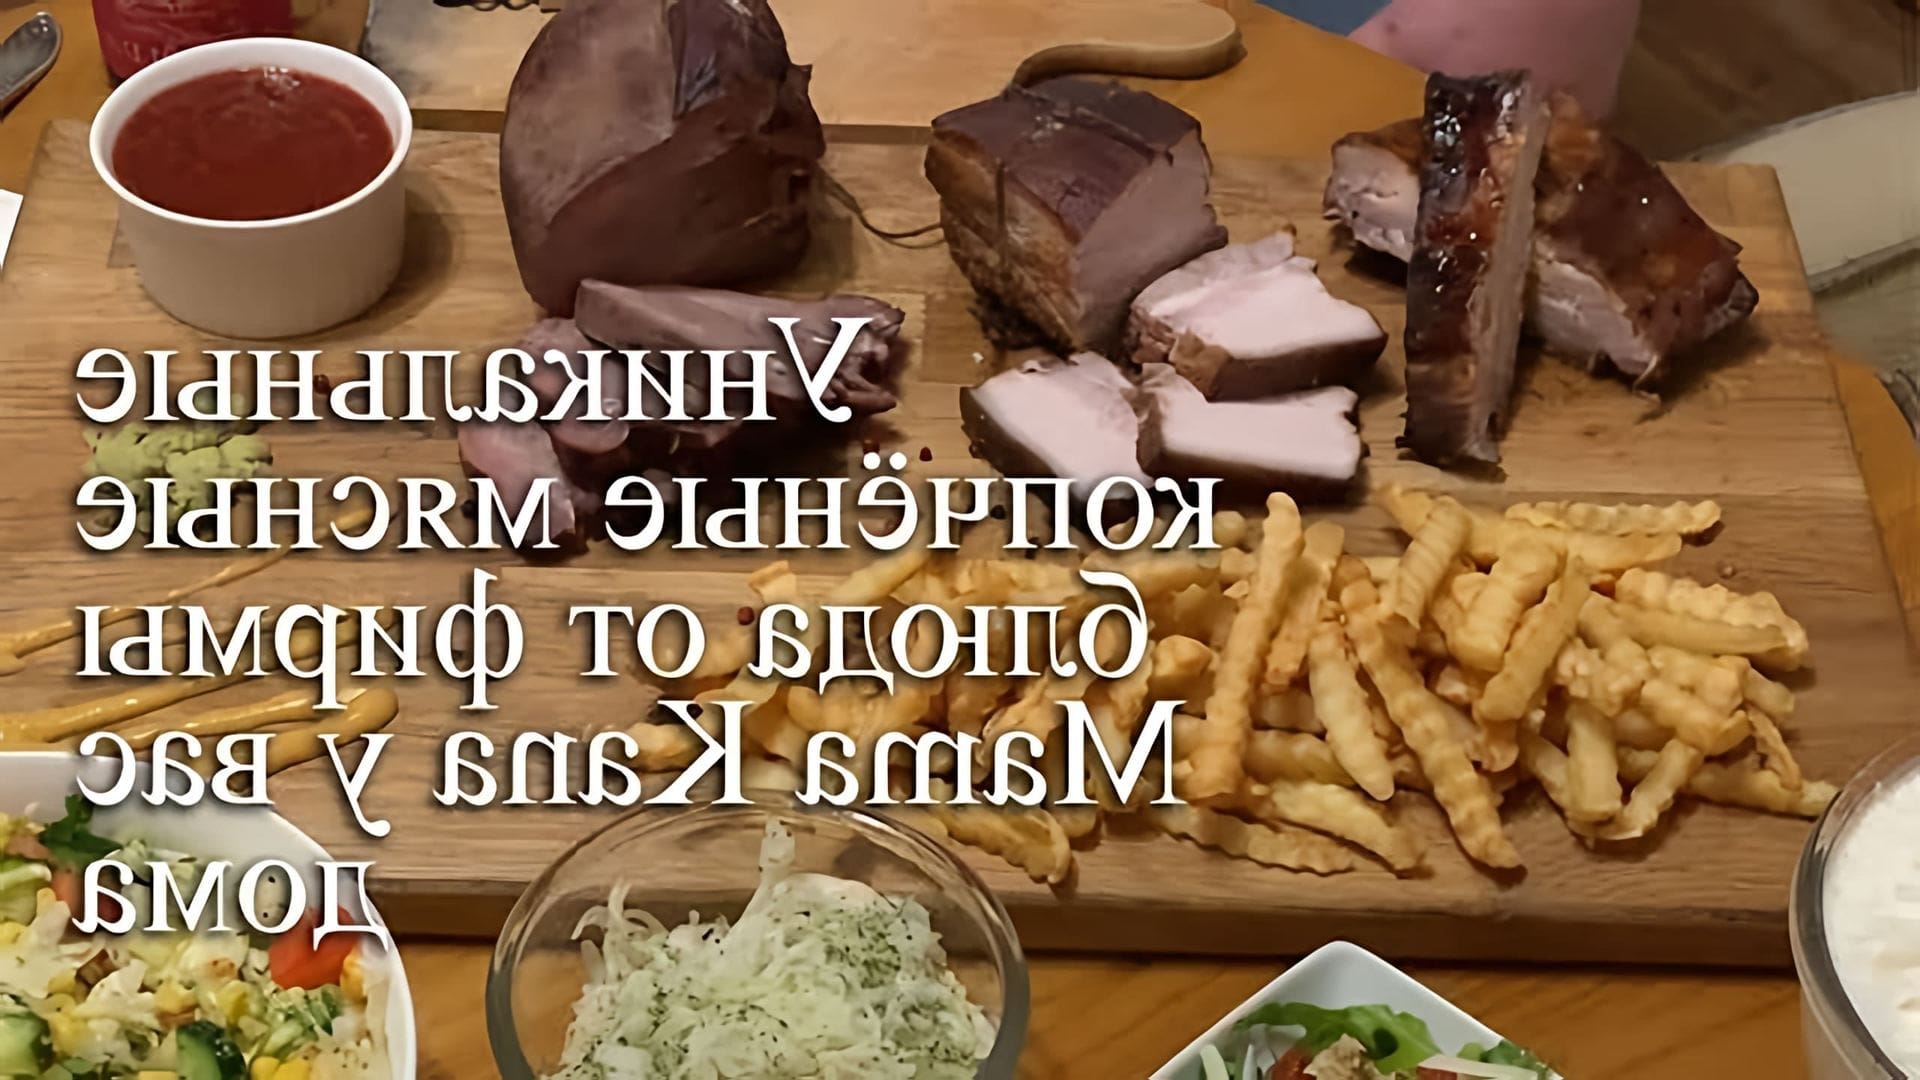 В данном видео рассказывается о копченых мясных блюдах от фирмы Mamа Kana